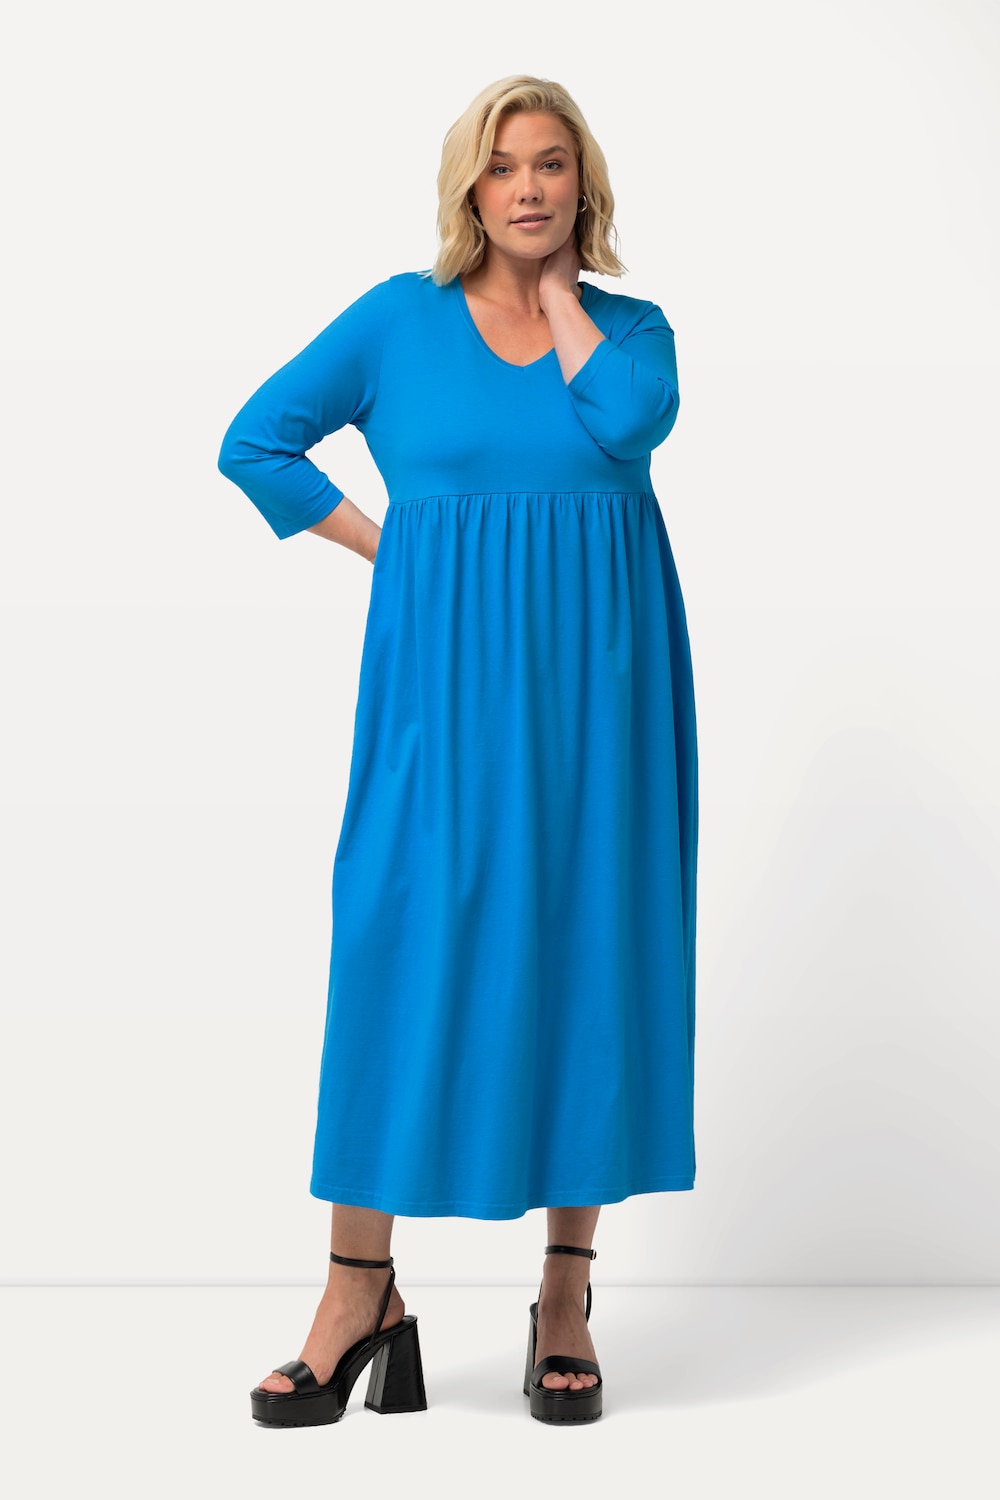 Grote Maten Jersey jurk, Dames, turquoise, Maat: 54/56, Katoen, Ulla Popken